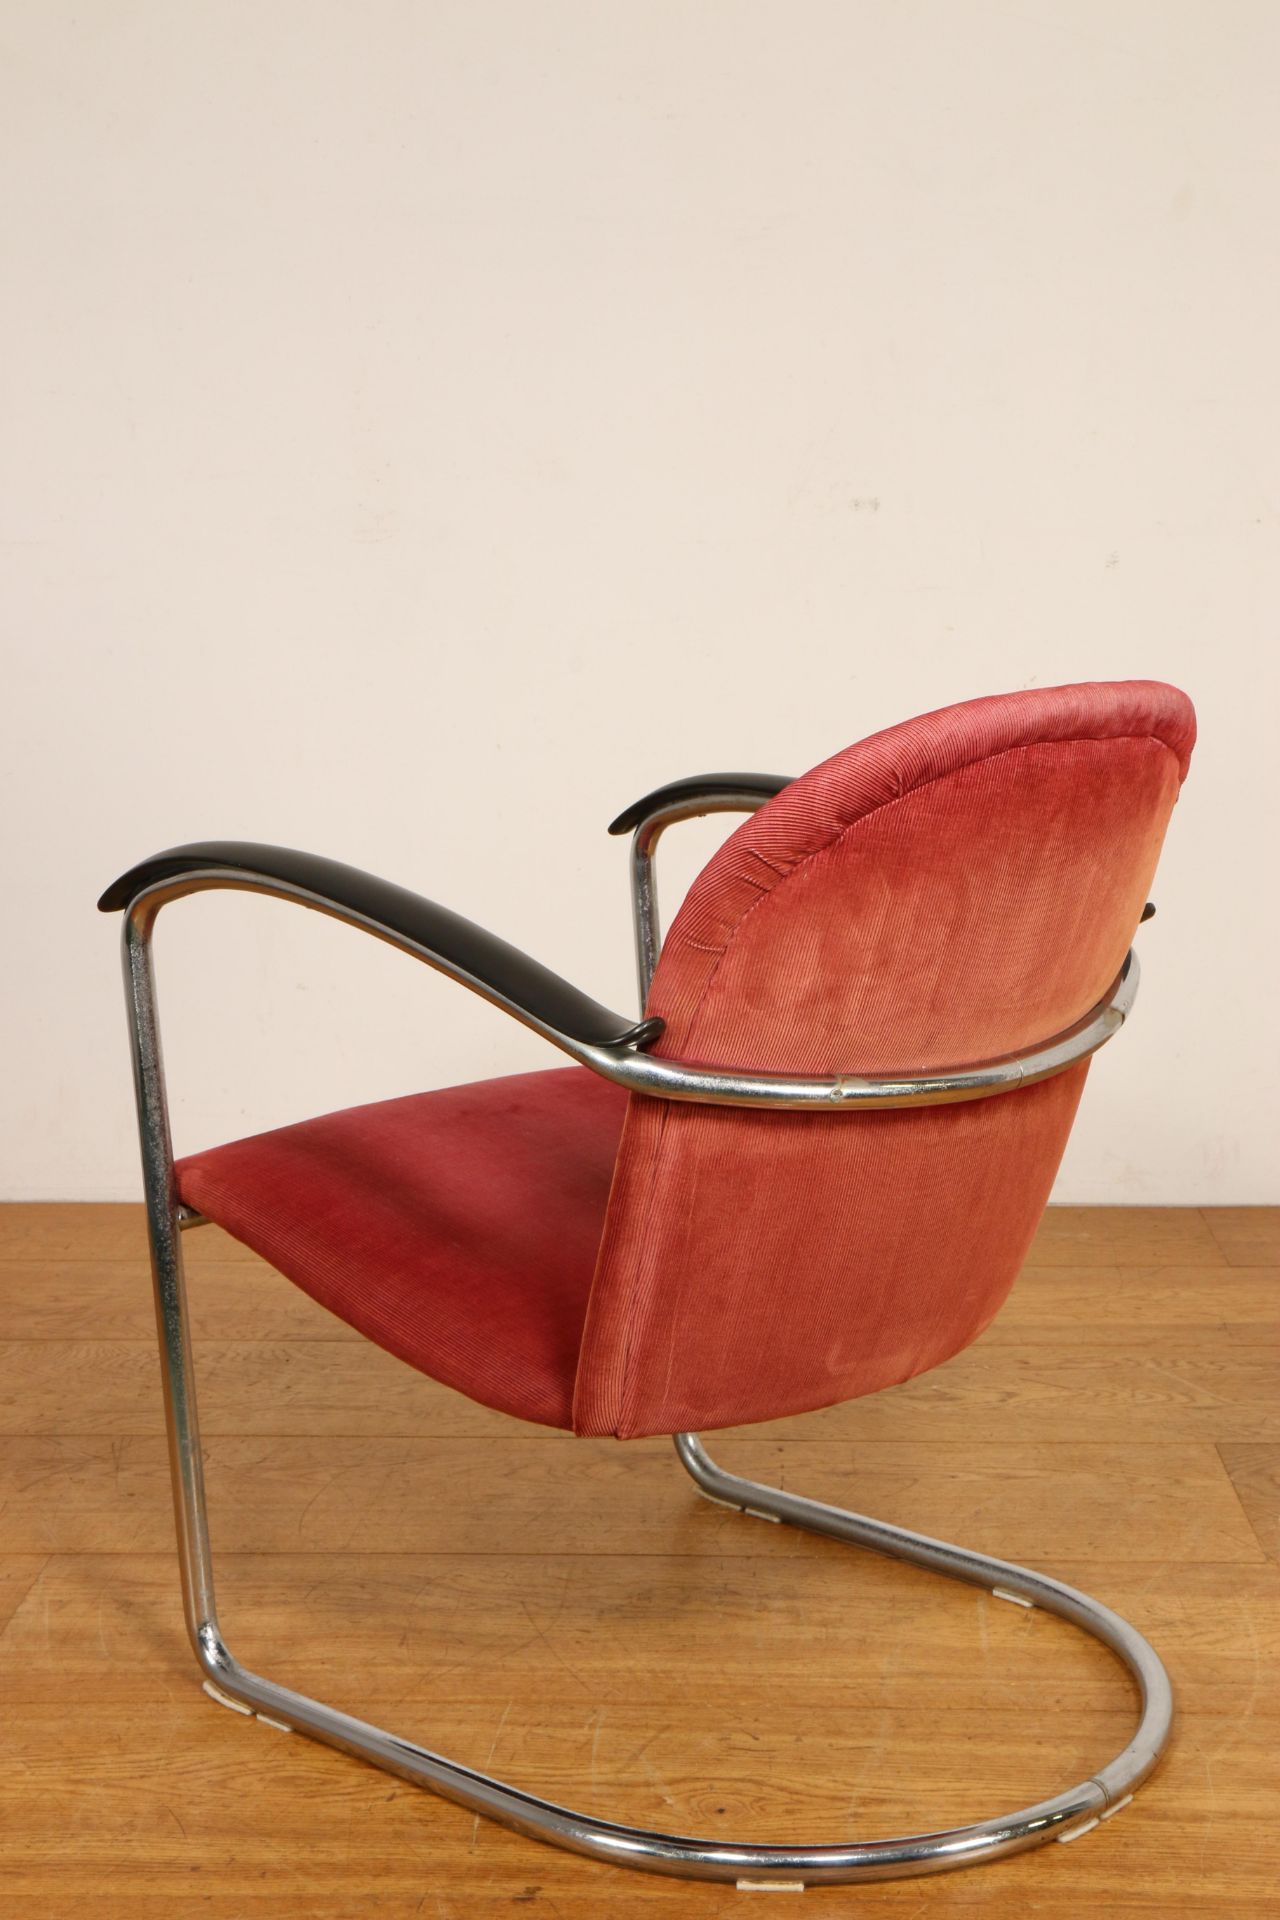 Verchroomd stalen buizenfauteuil, naar '414' fauteuil van W.H. Gispen, - Bild 2 aus 3